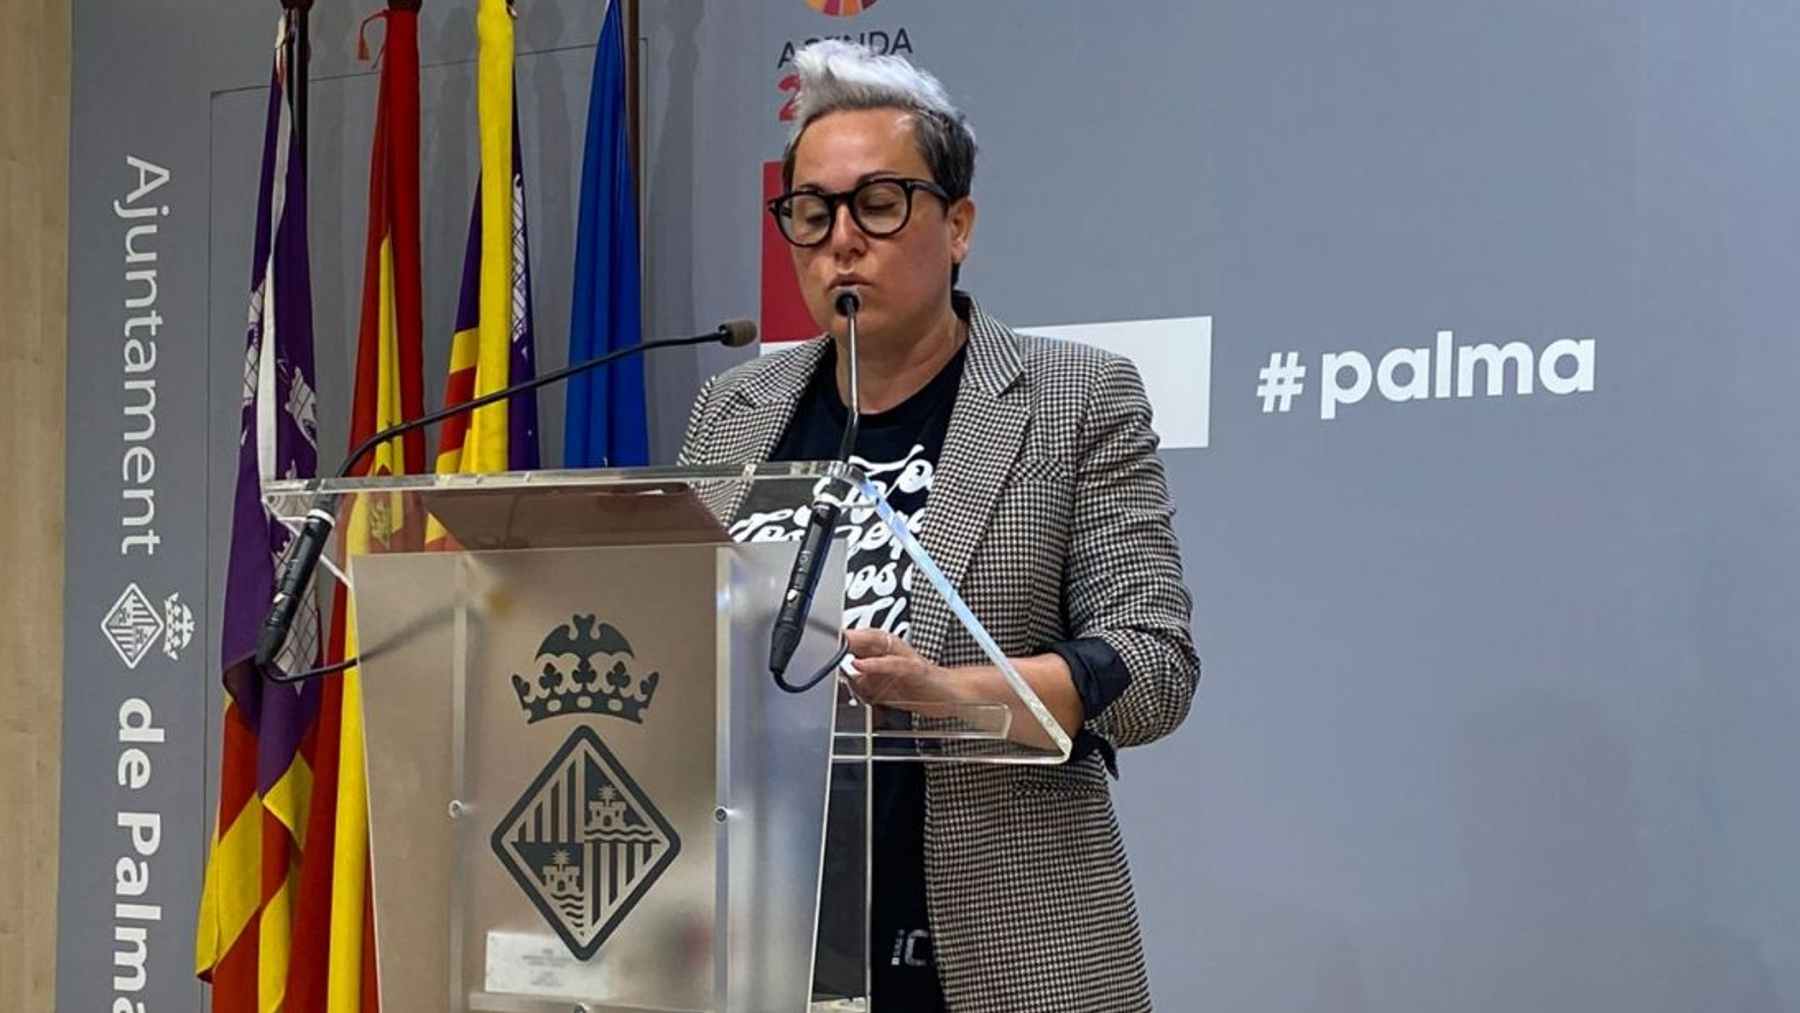 La ya ex concejala de Podemos en el Ayuntamiento de Palma, Sonia Vivas.